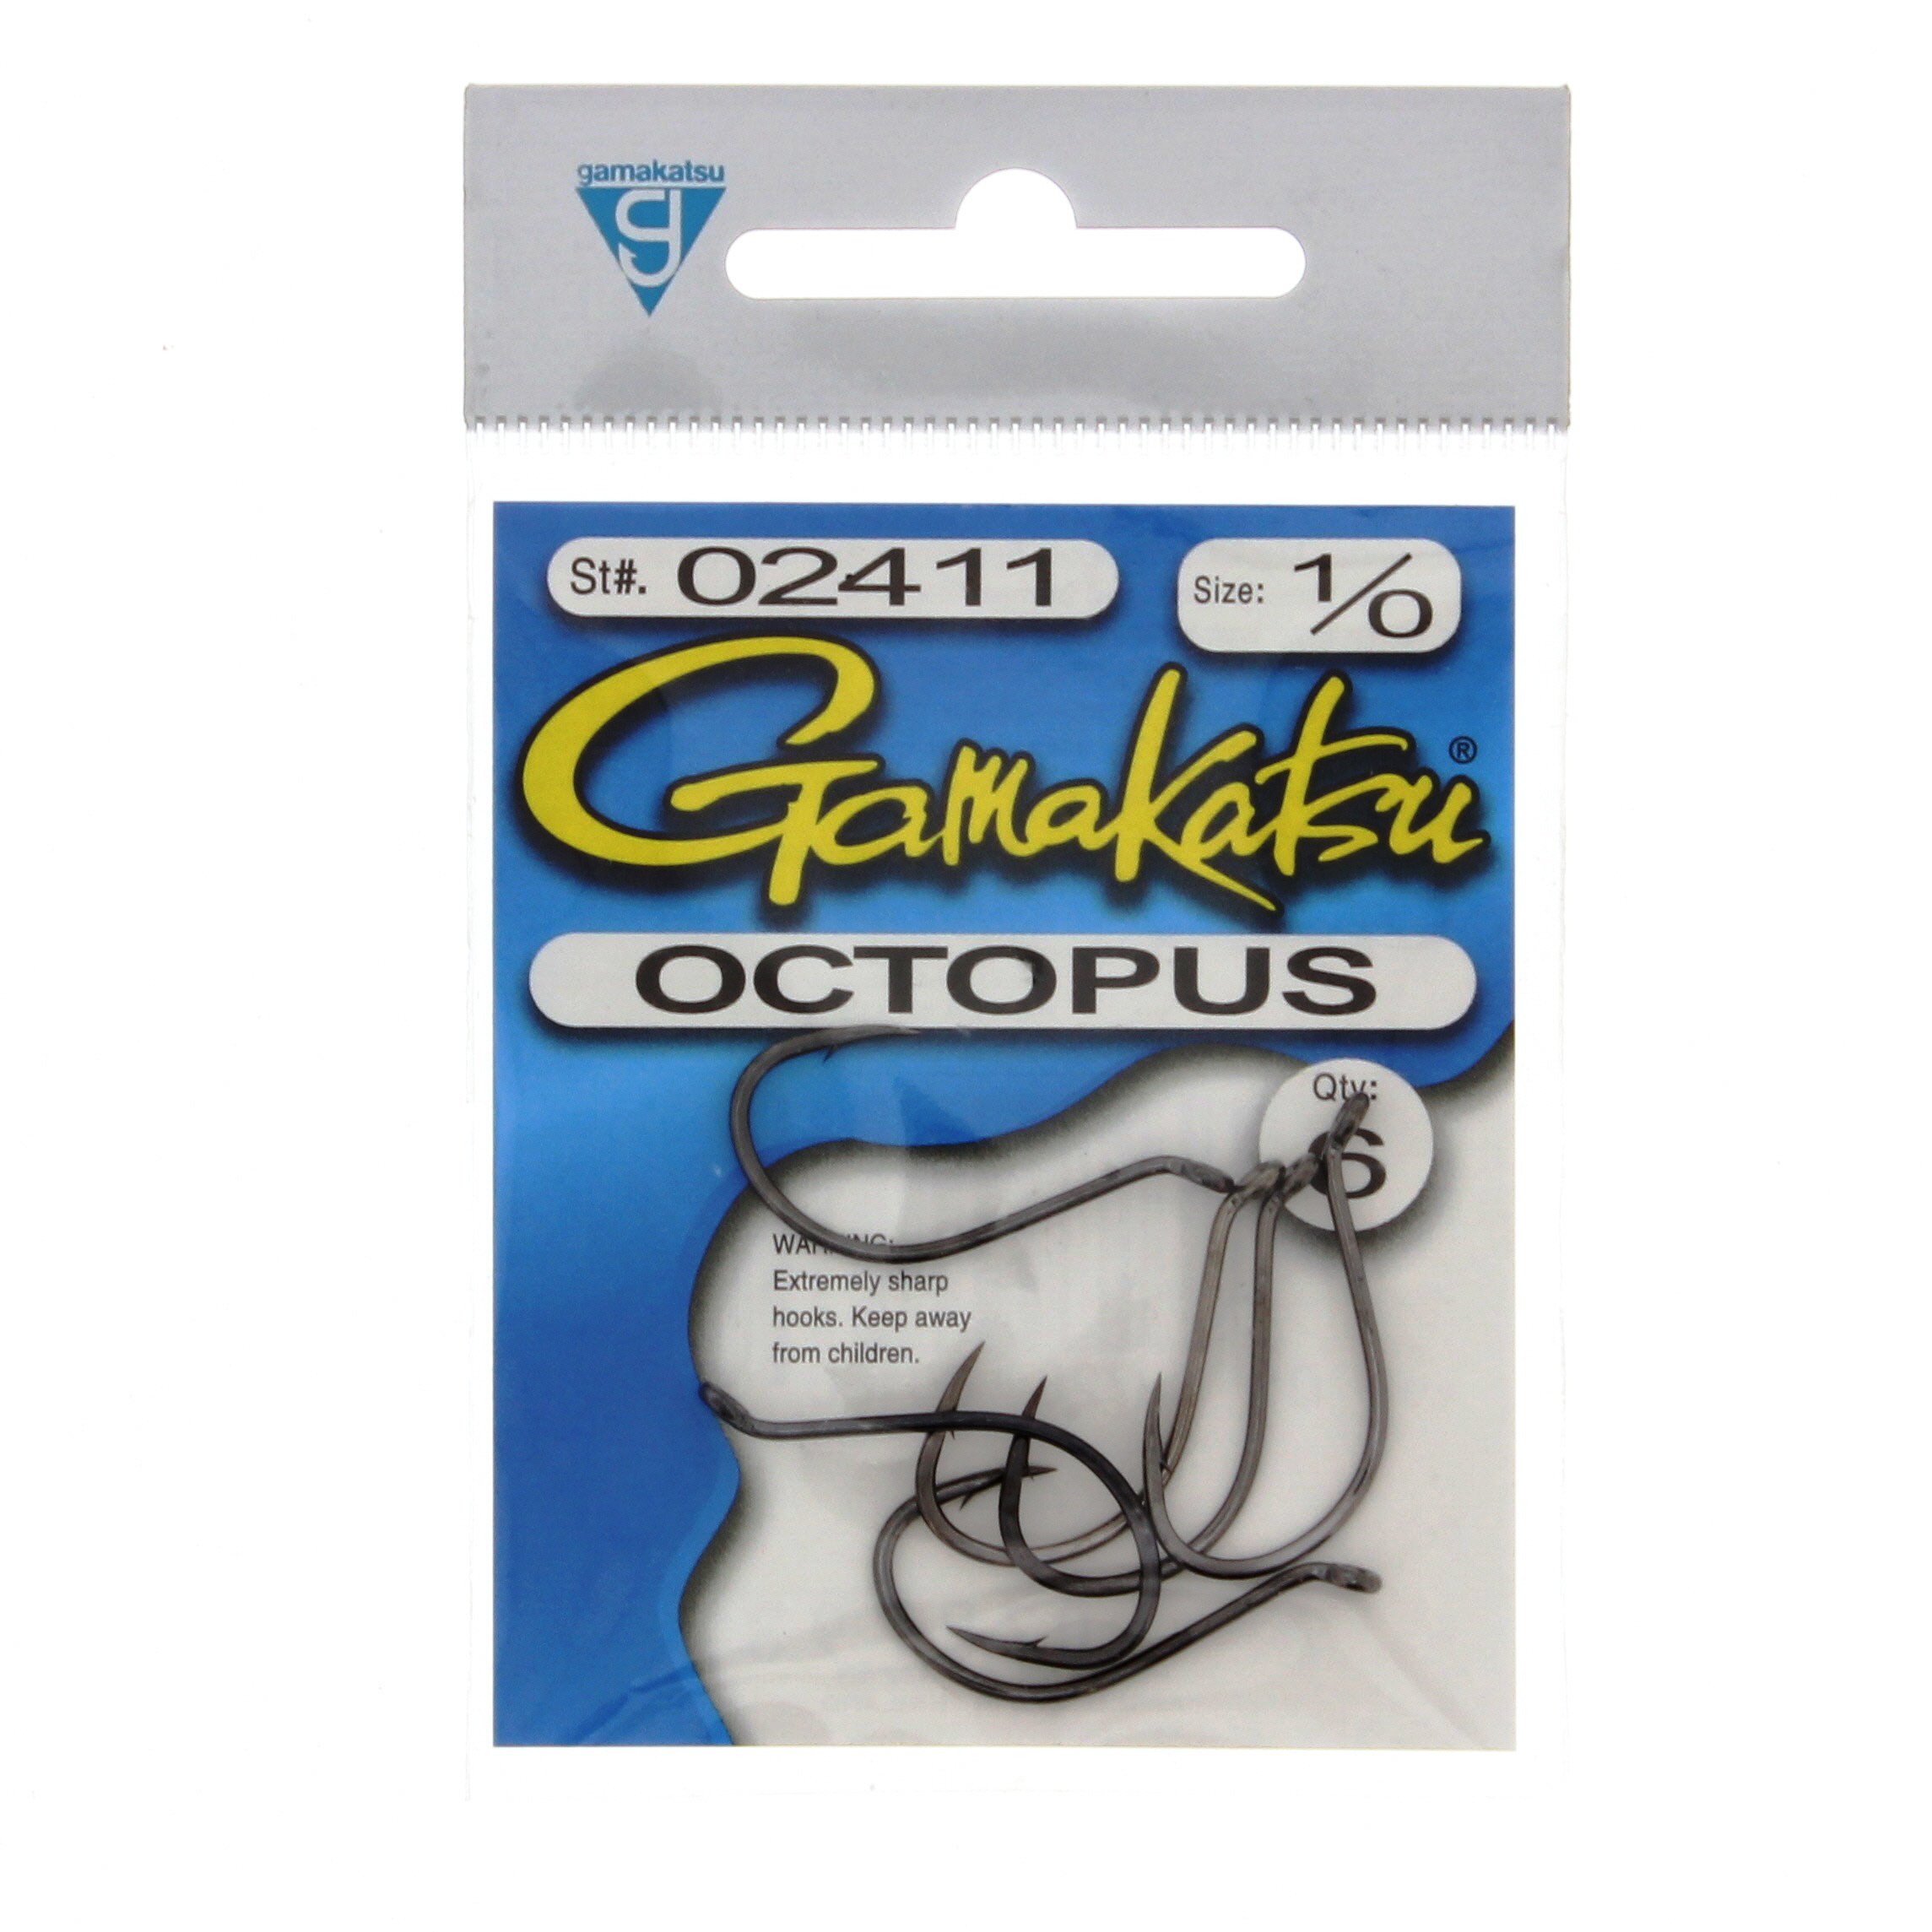 Gamakatsu Octopus NS Black Hook Size 2/0 100 Per Pack 02412-100 